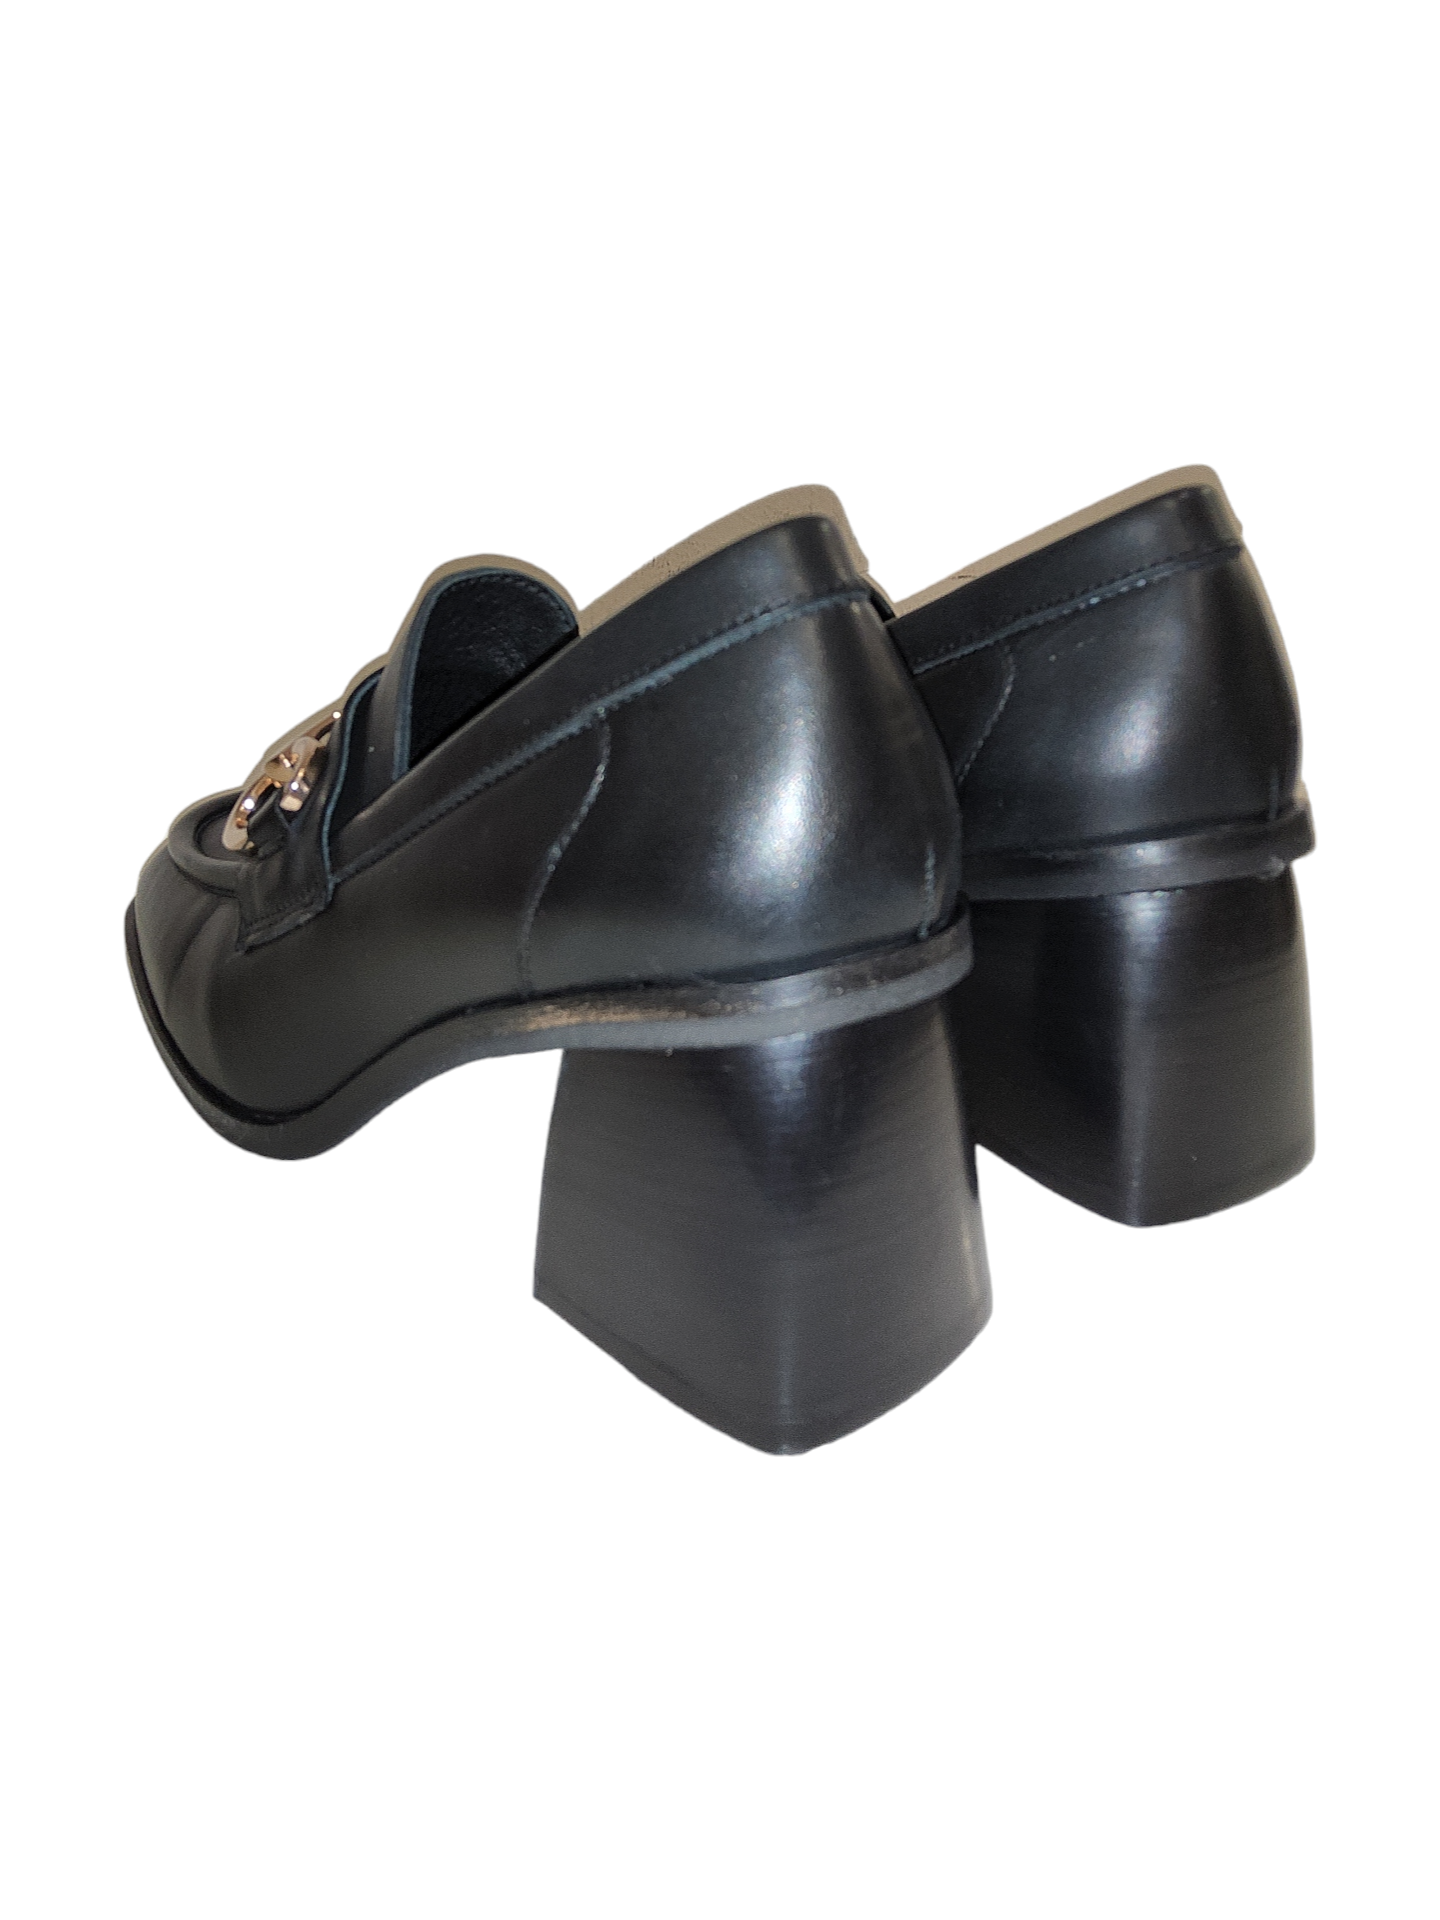 Black heeled loafer